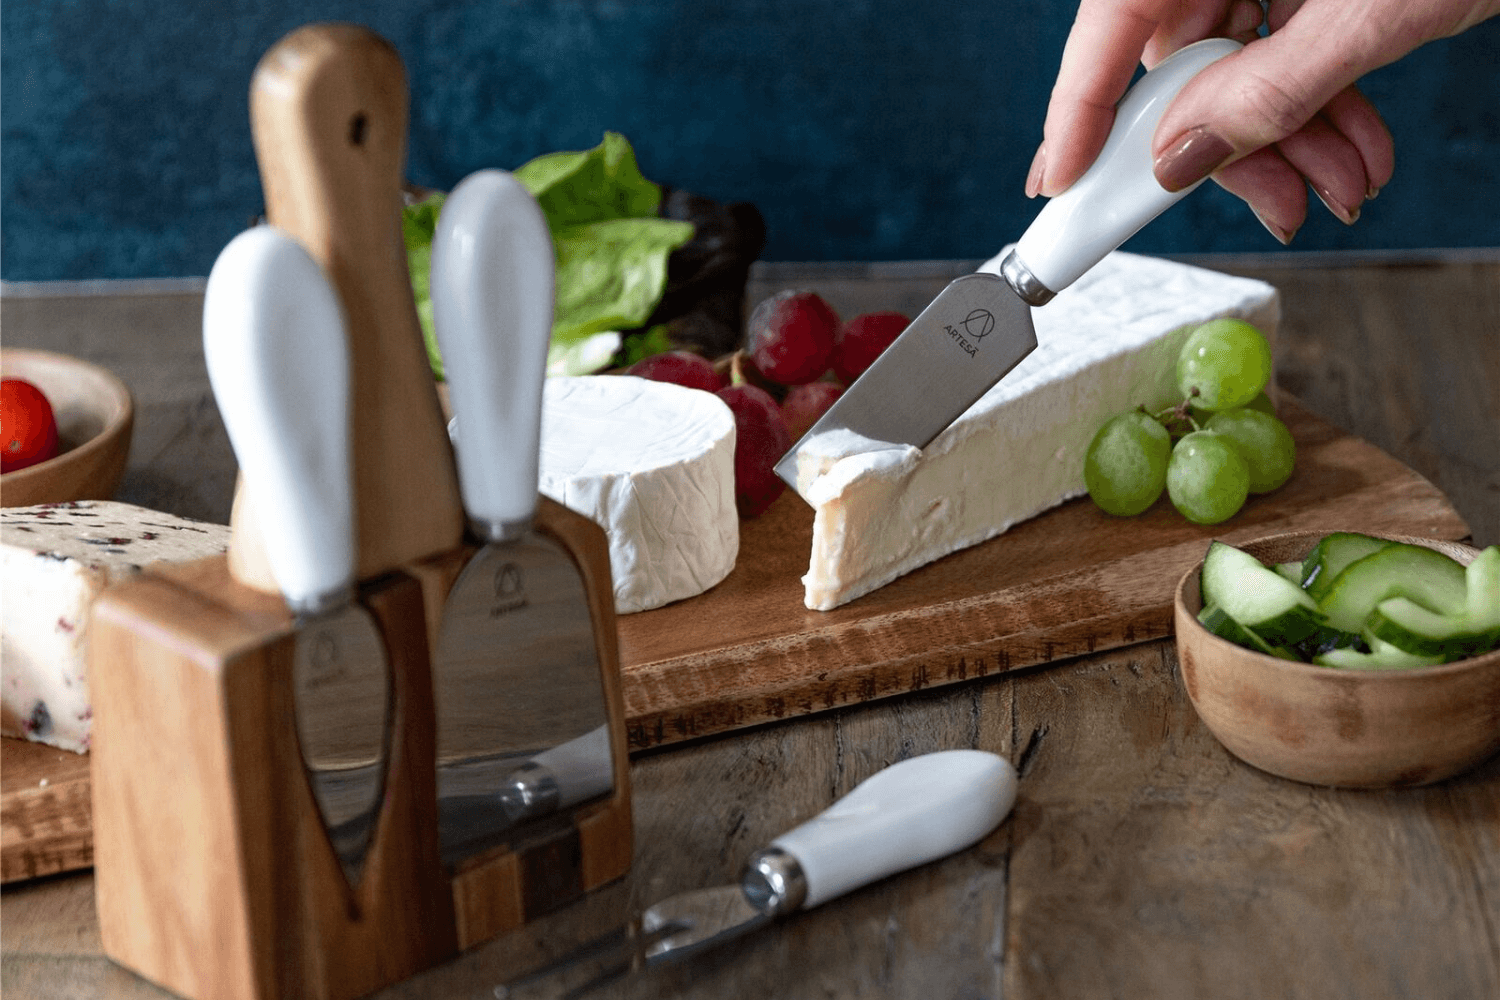 Set de 3 couteaux à fromage Artesa